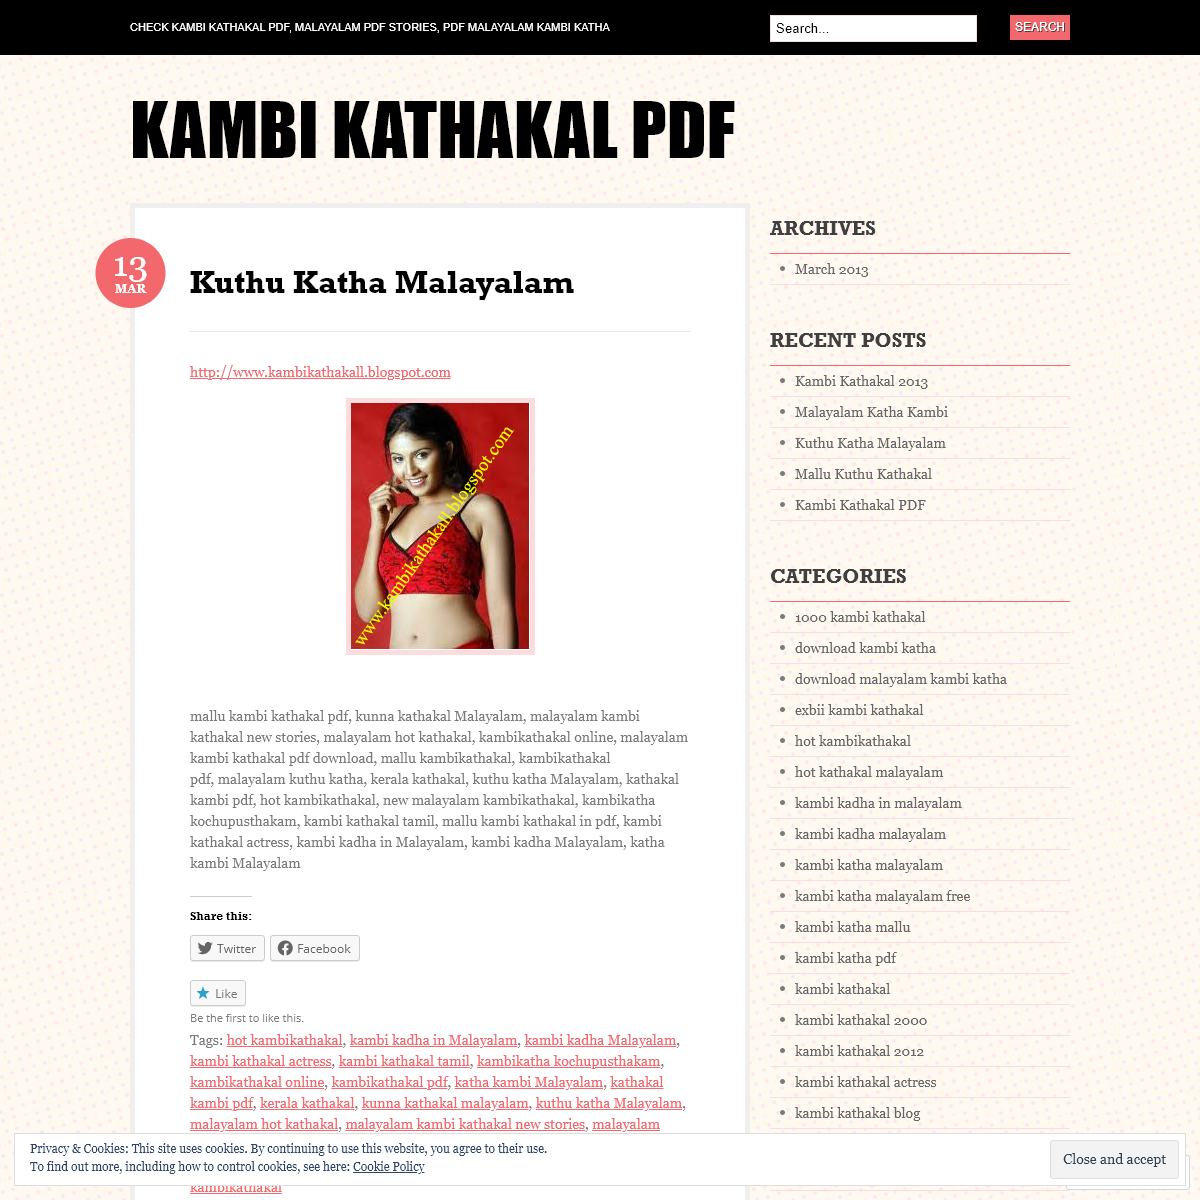 A complete backup of https://kambikathakalpdf.wordpress.com/2013/03/13/kuthu-katha-malayalam/